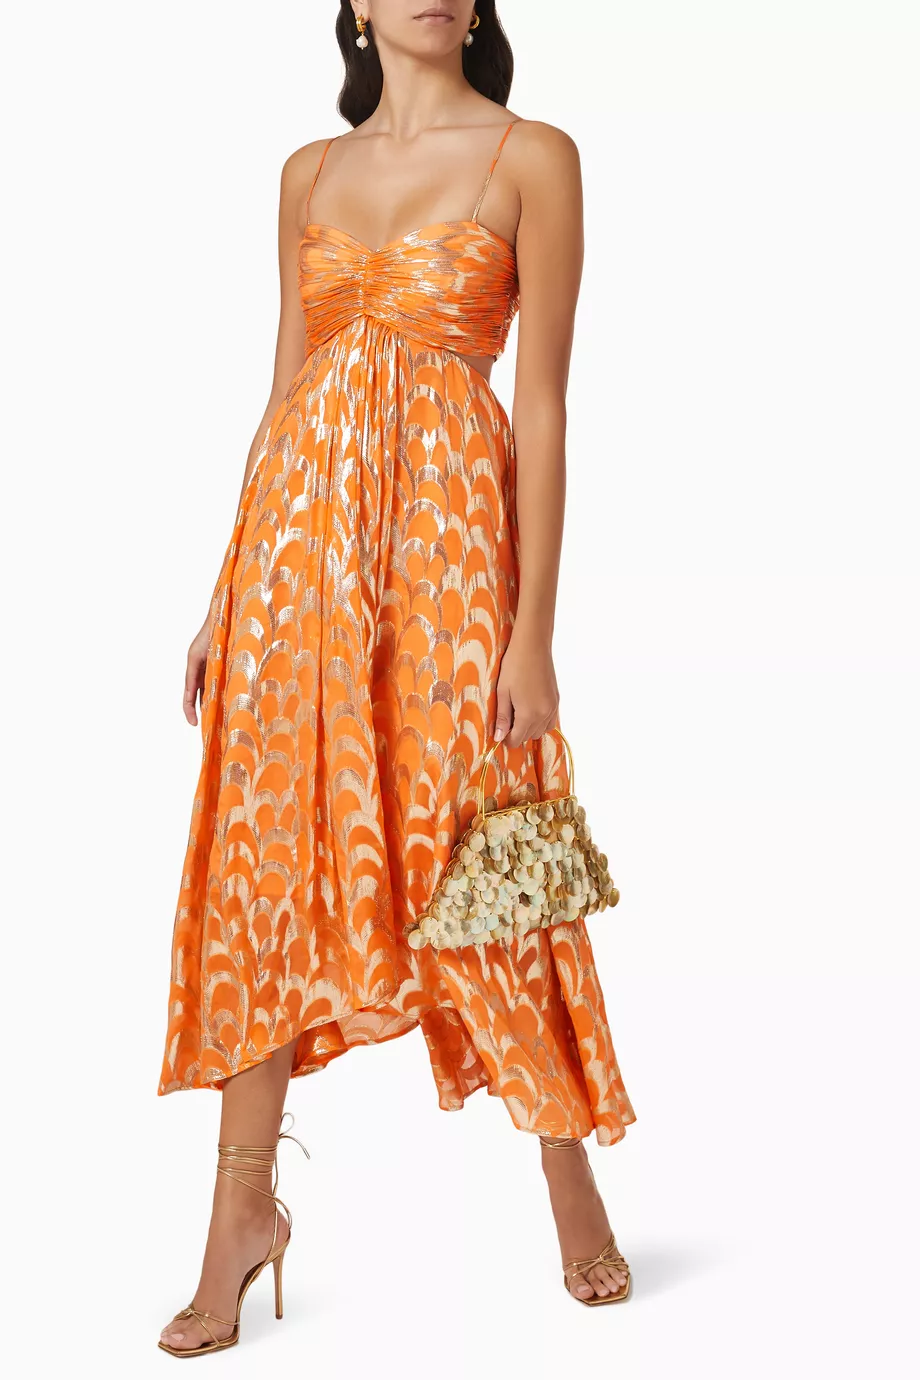 Orange A-Line Spaghetti Straps Chic Long Party Dress, DP2096